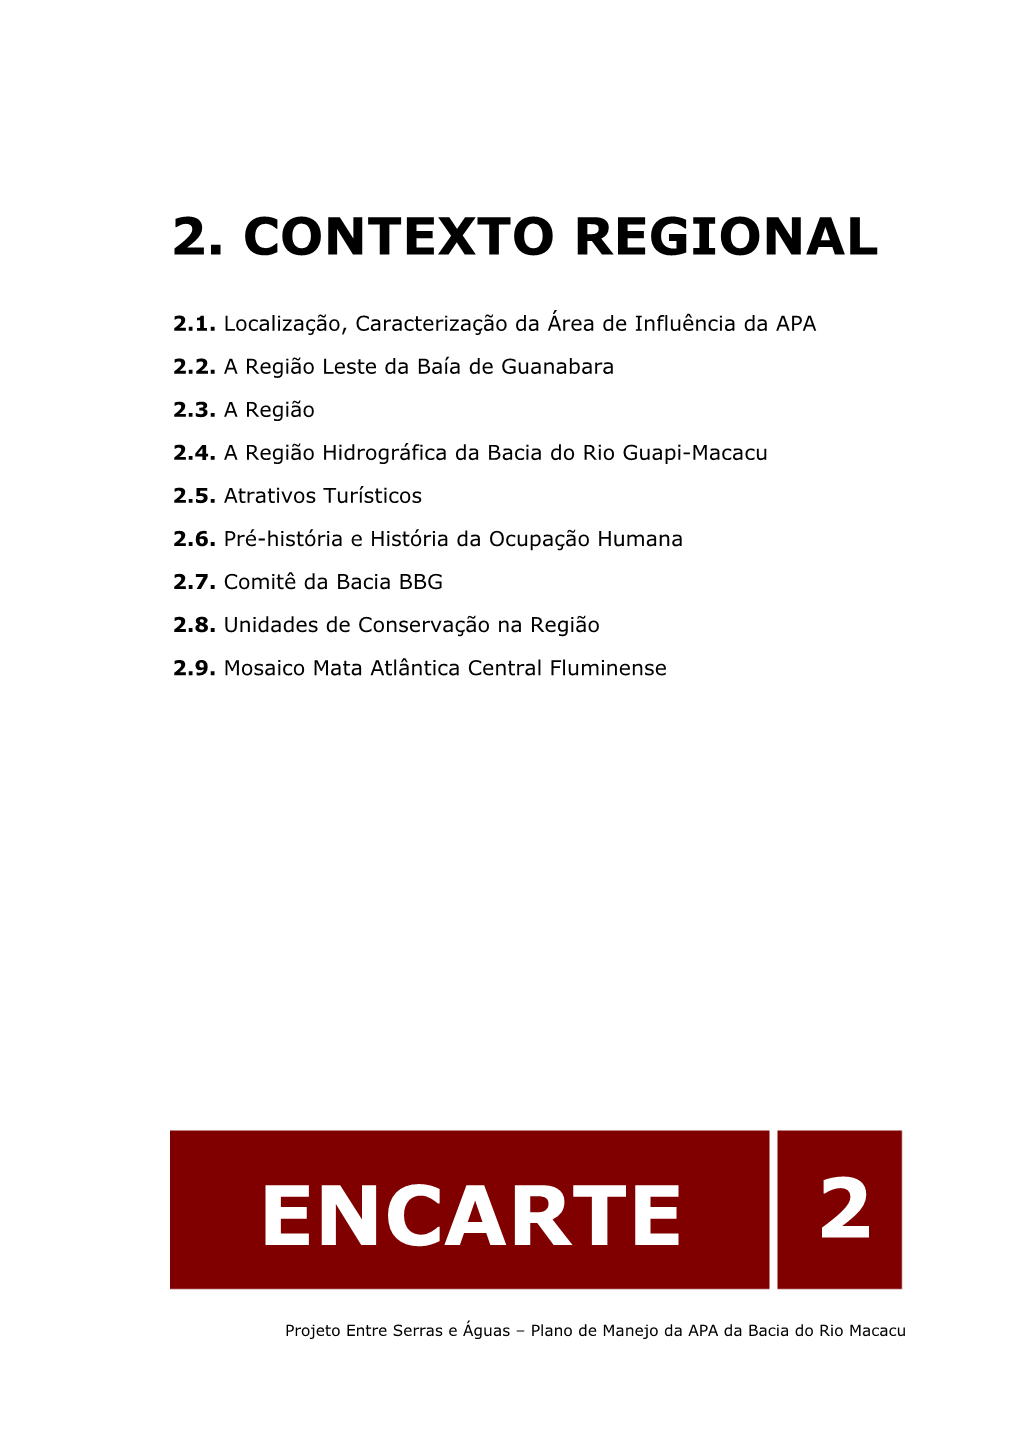 2. Contexto Regional